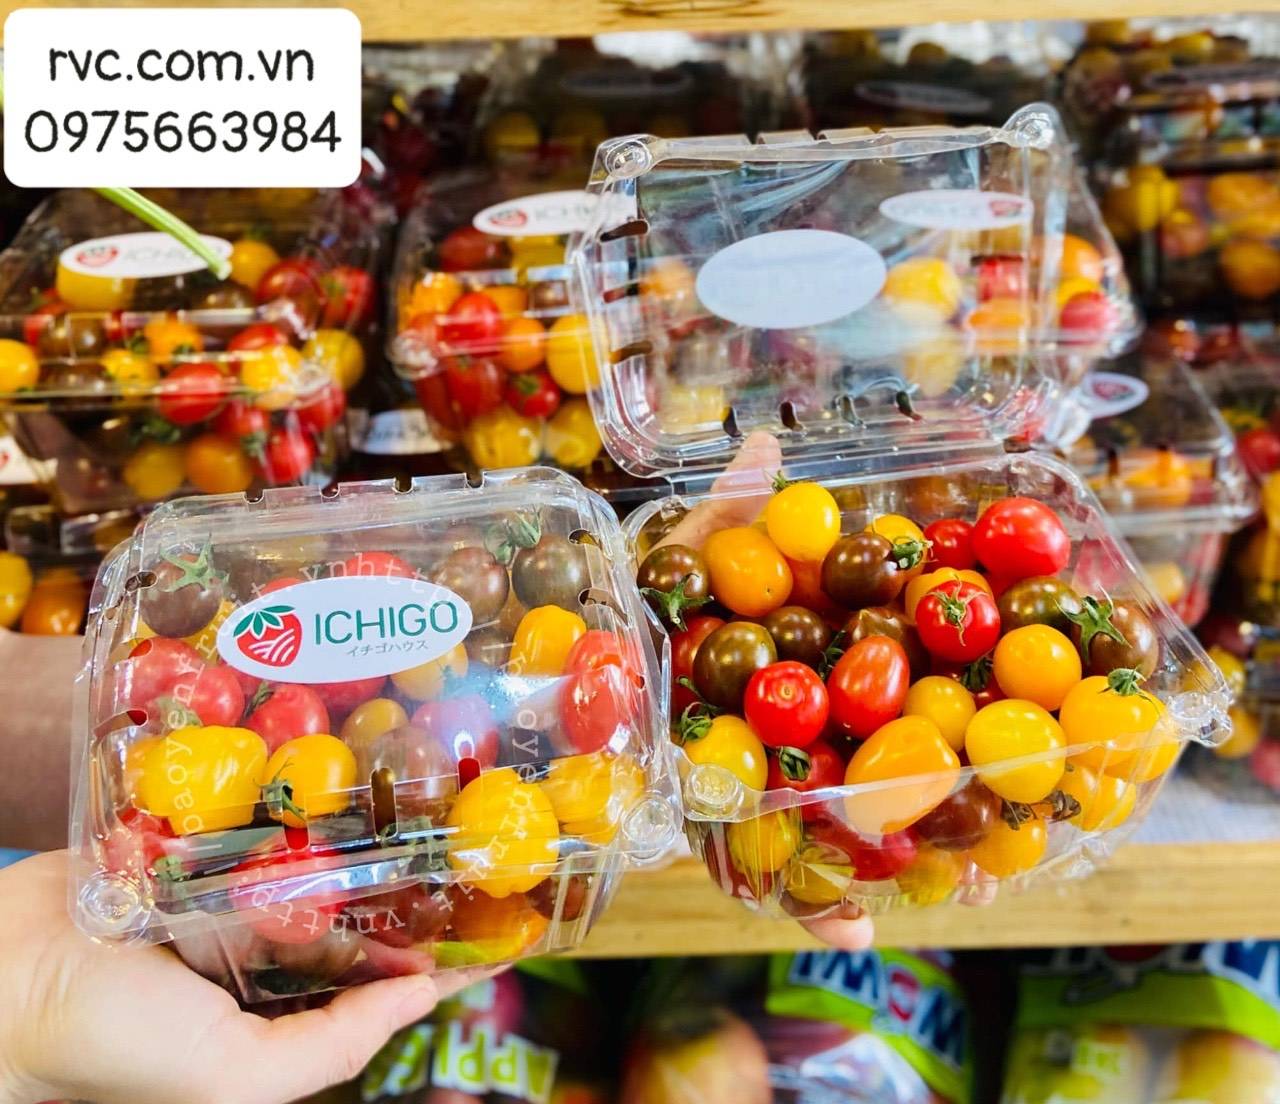 Tuyệt chiêu bảo quản 500g trái cây hiệu quả bằng hộp nhựa P500D